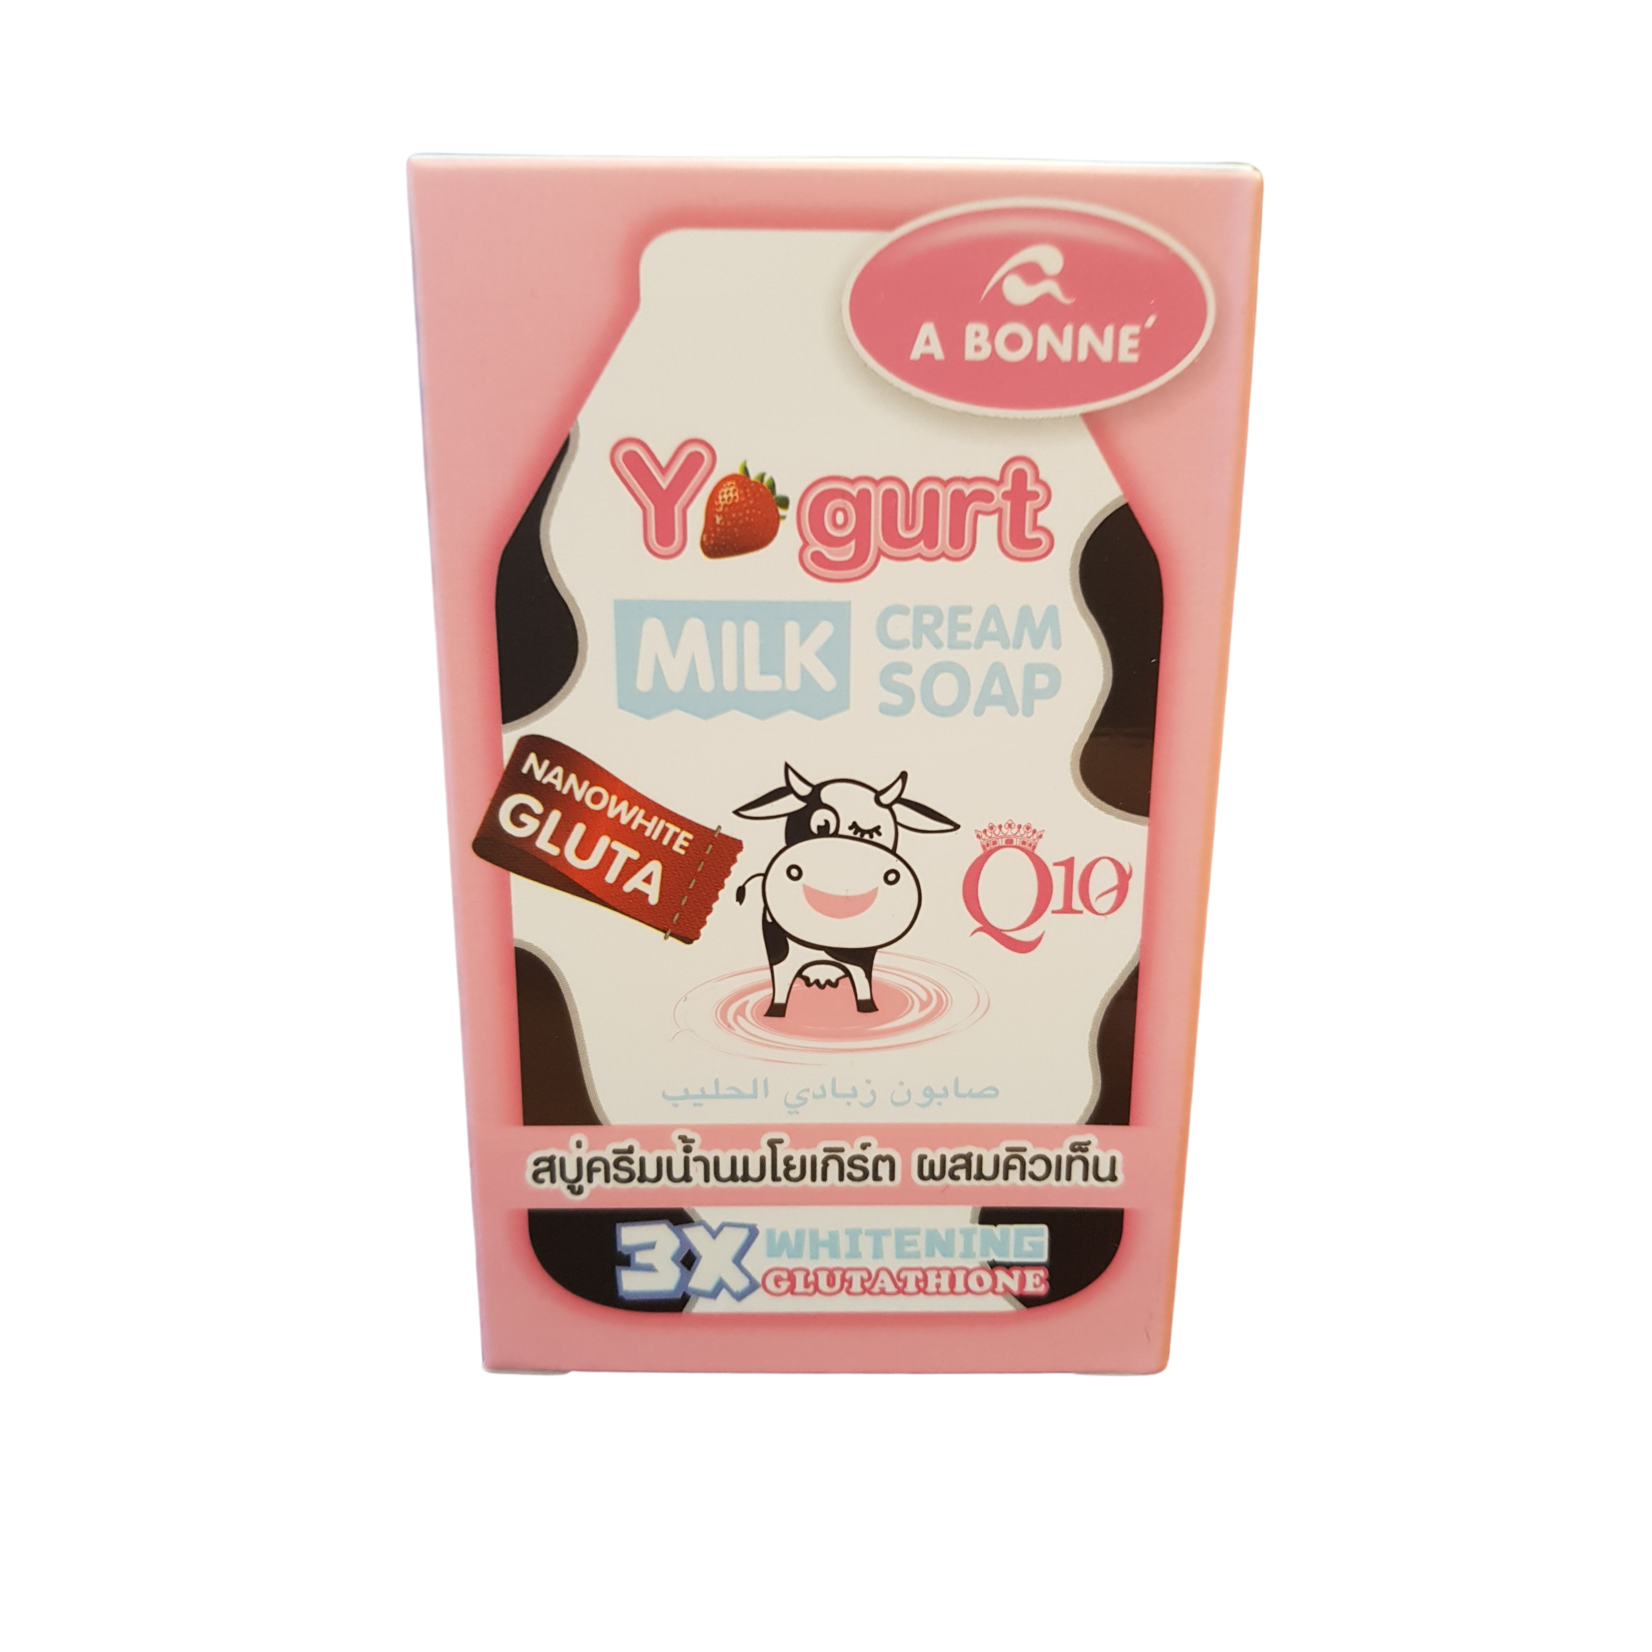 Yoko A Bonné Yoghurt Cream Soap met nanowhite Gluta